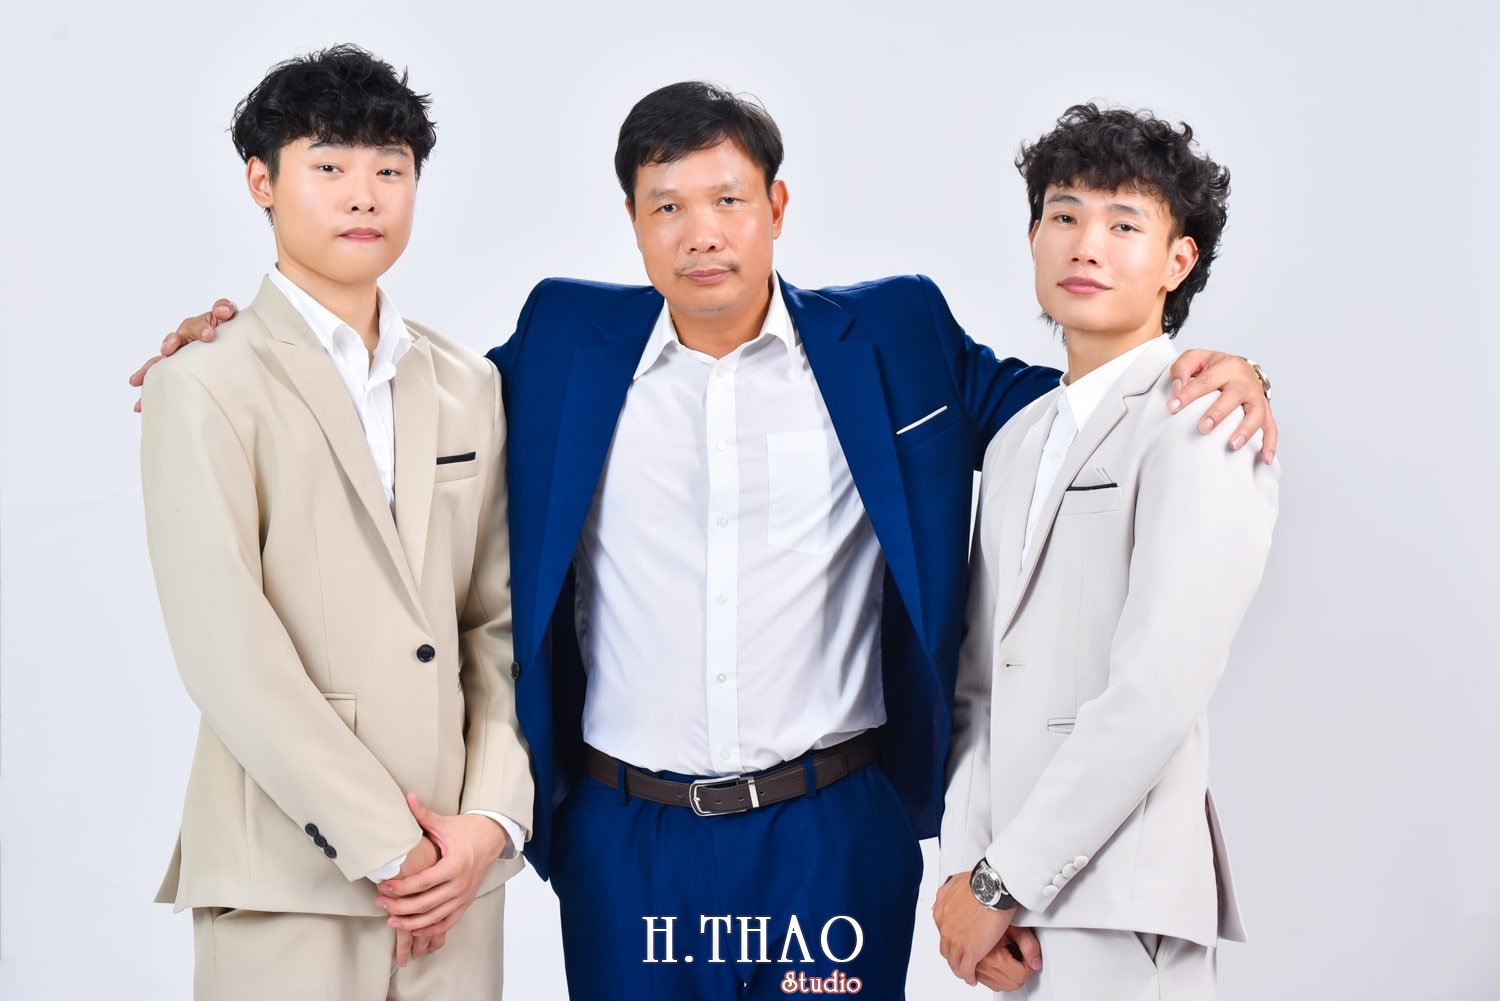 Anh gia dinh 5 nguoi 5 min - Góc ảnh gia đình chụp trong studio đẹp đơn giản- HThao Studio